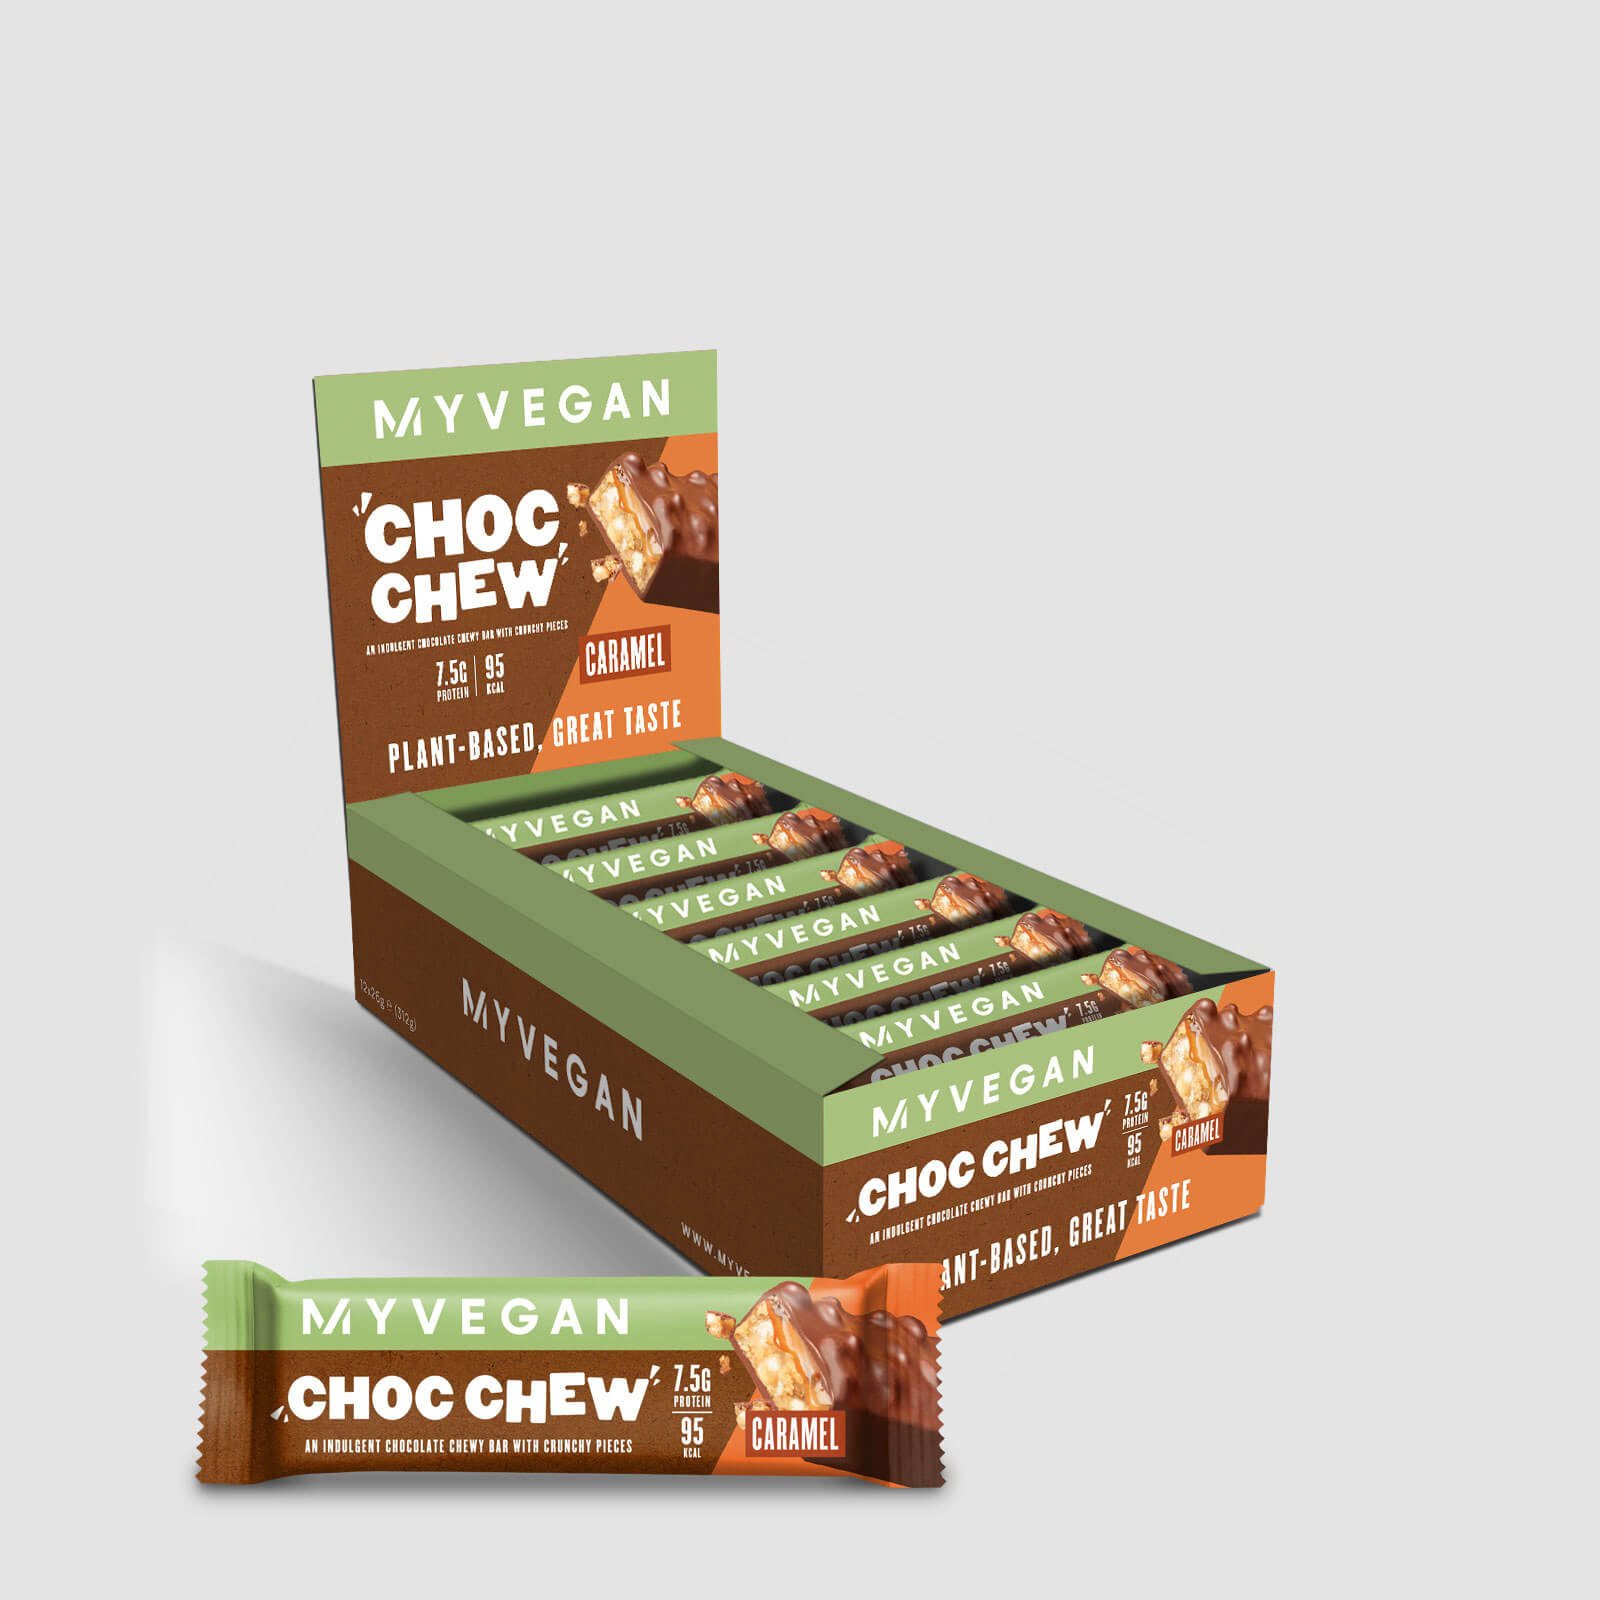 Myvegan Choc Chew - Caramel